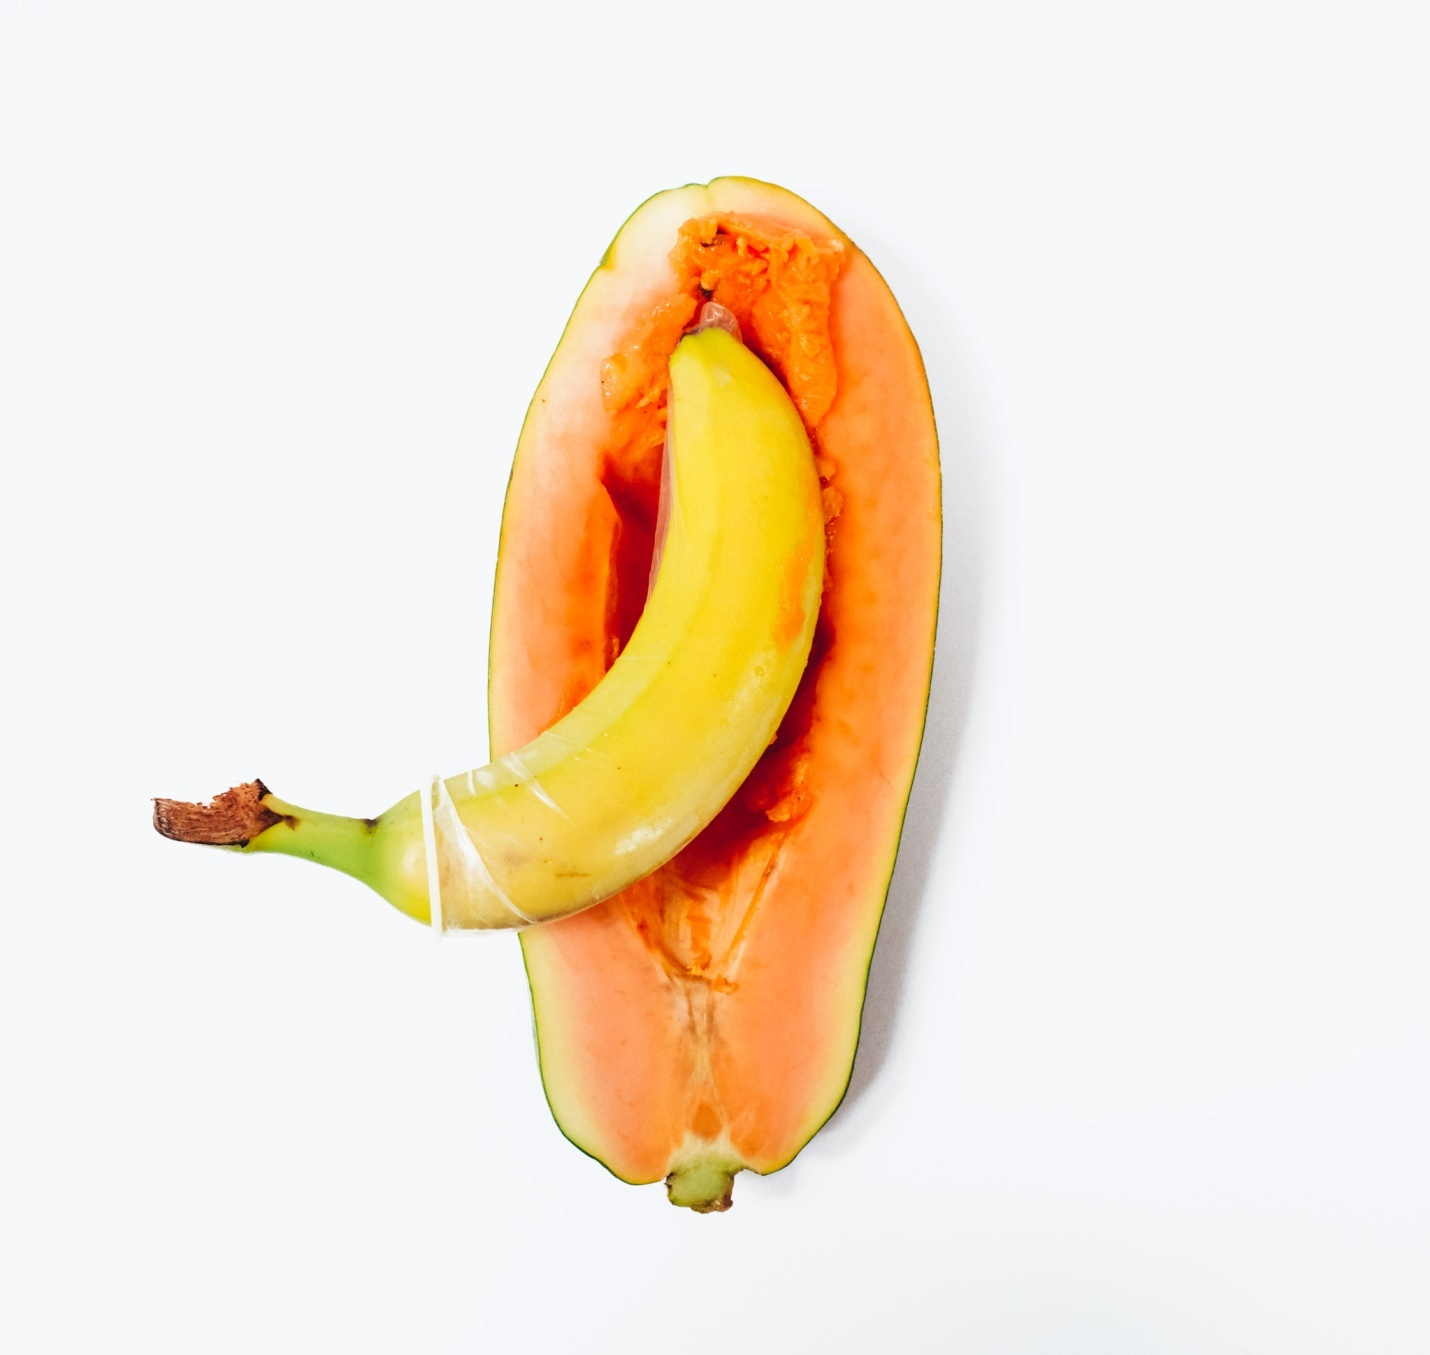 A banana inserted inside a papaya